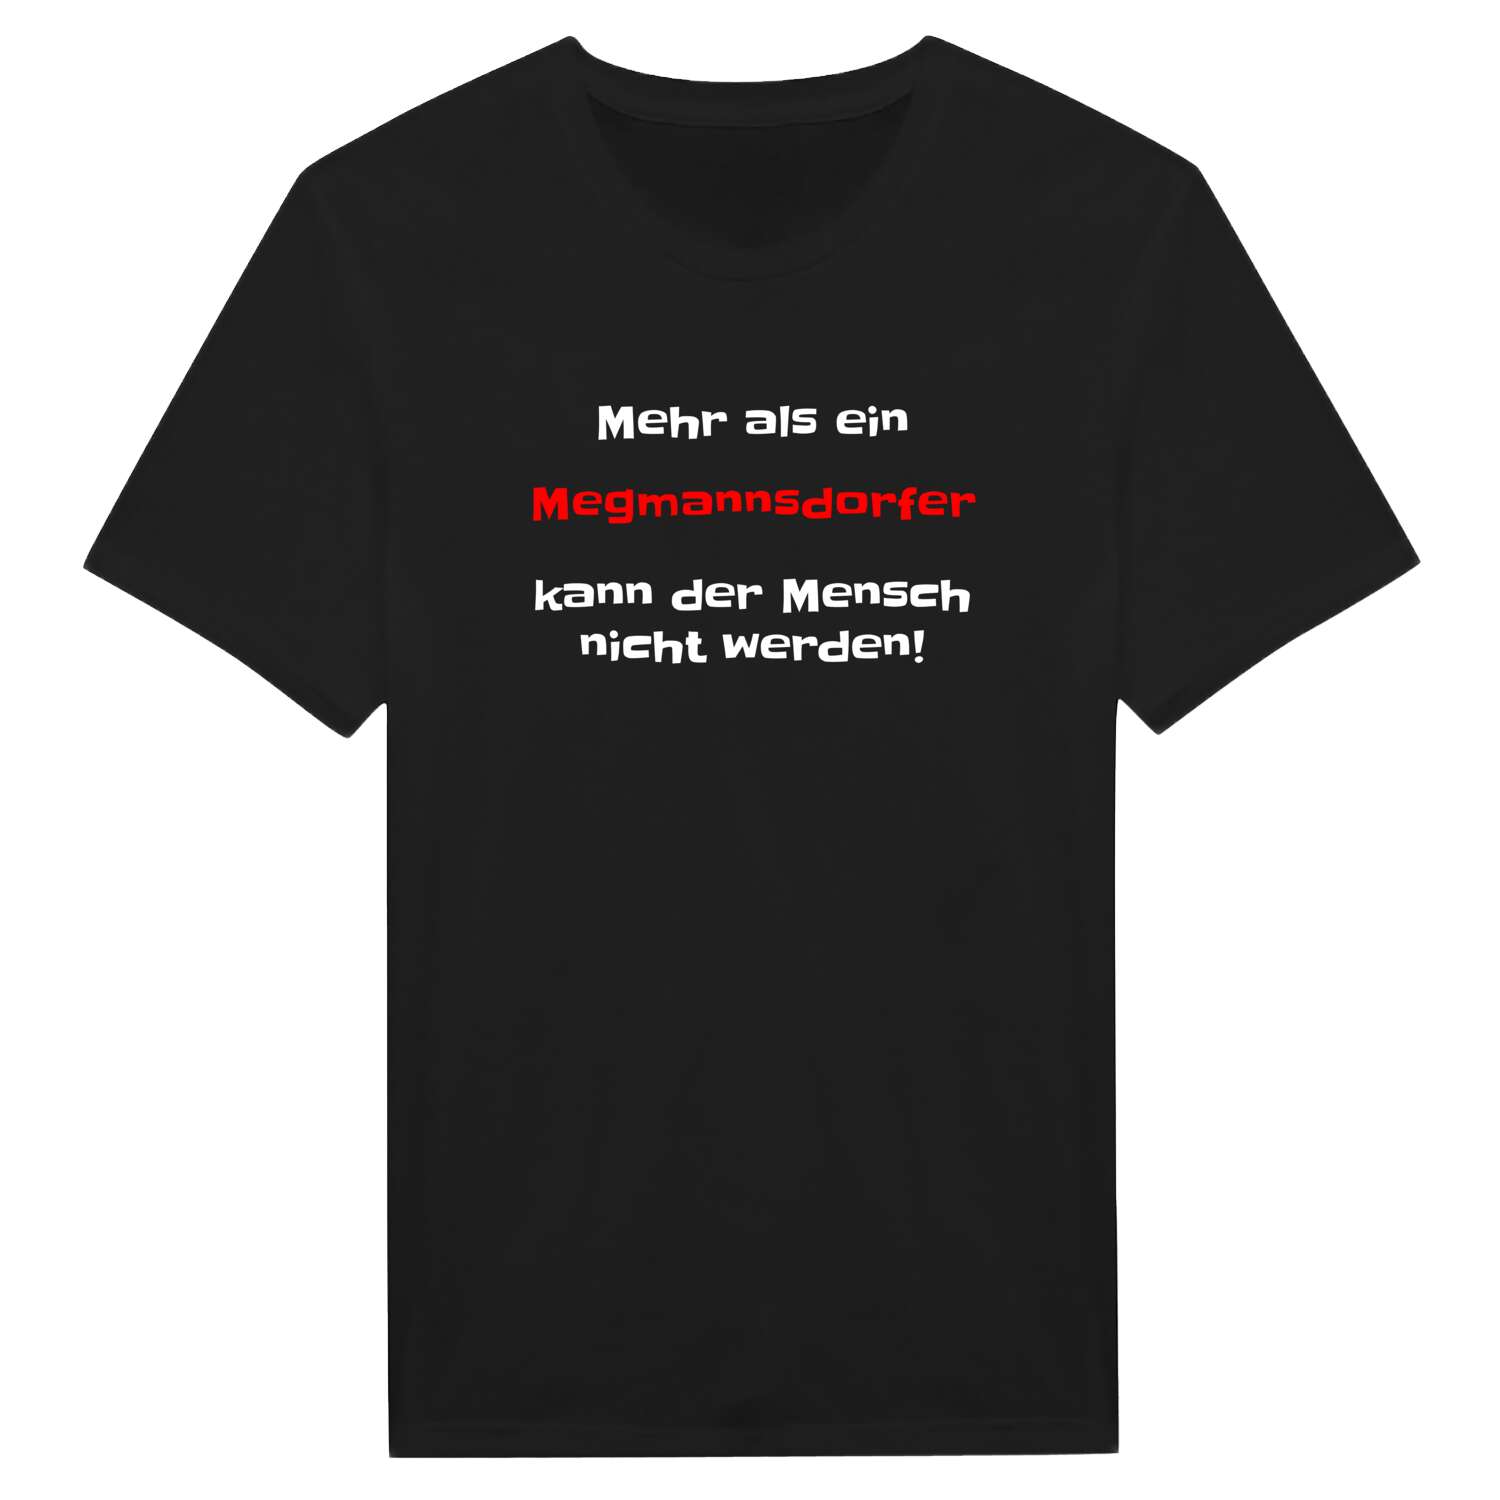 Megmannsdorf T-Shirt »Mehr als ein«